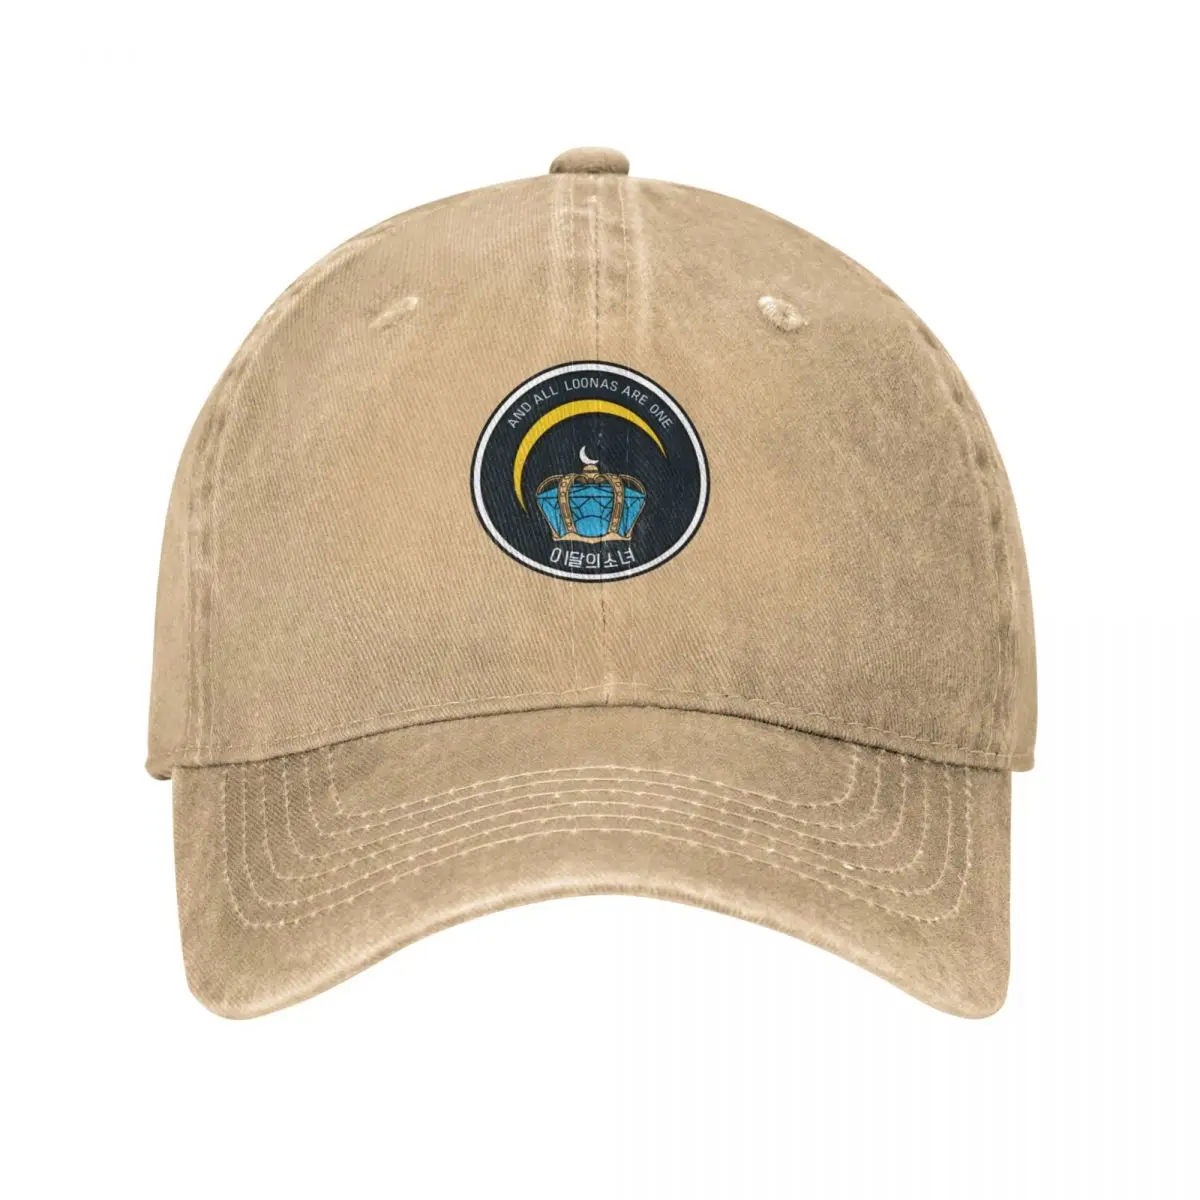 

Loona Orbit Unit Patch-Jinsoul Cap Cowboy Hat wild ball hat Cap male icon designer man hat Women's